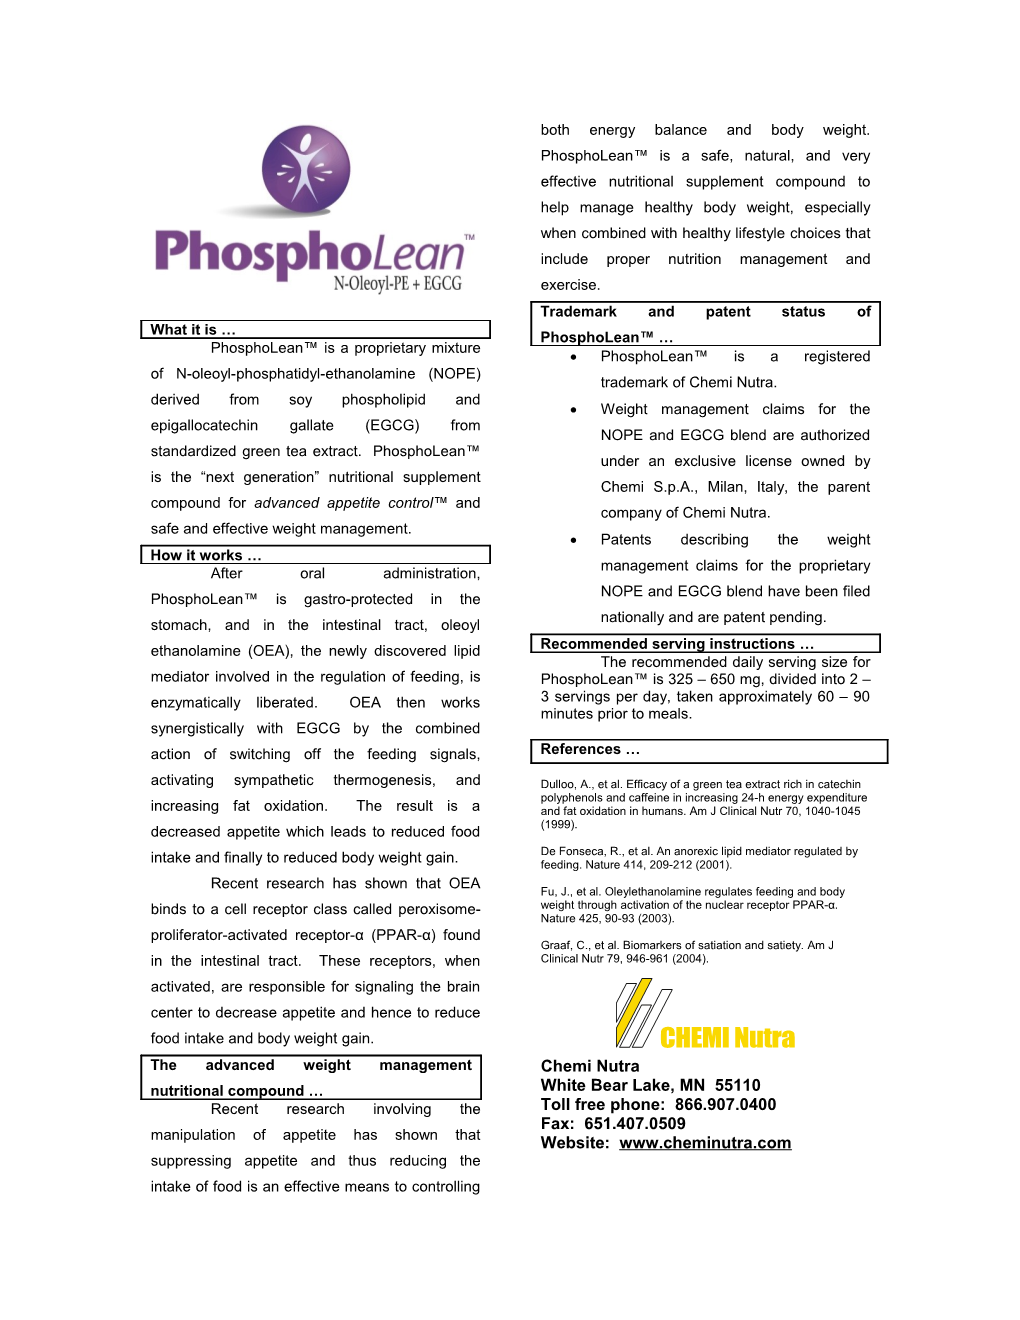 Phospholean Is a Proprietary Mixture of N-Oleoyl-Phosphatidyl-Ethanolamine (NOPE) Derived